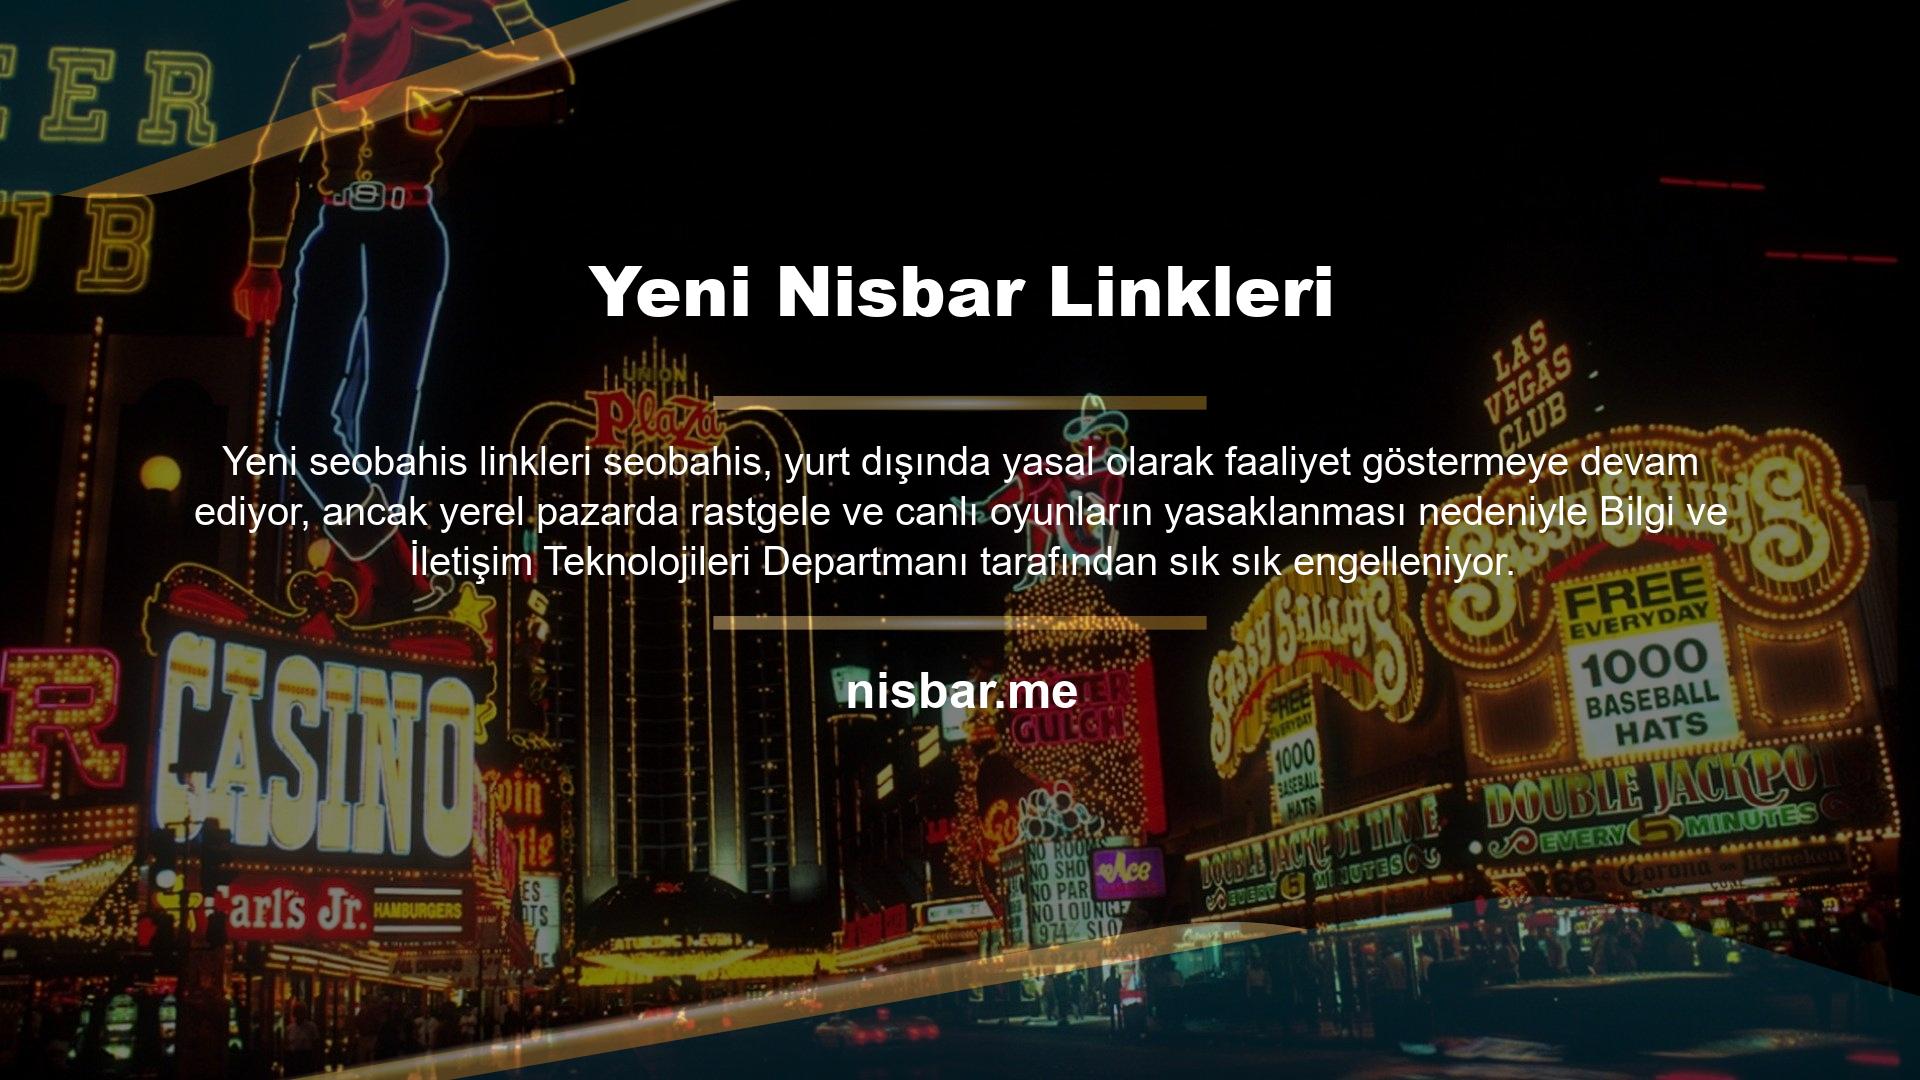 Nisbar, yerel bahis meraklıları için işleri kolaylaştırmak için bilgilerini günceller